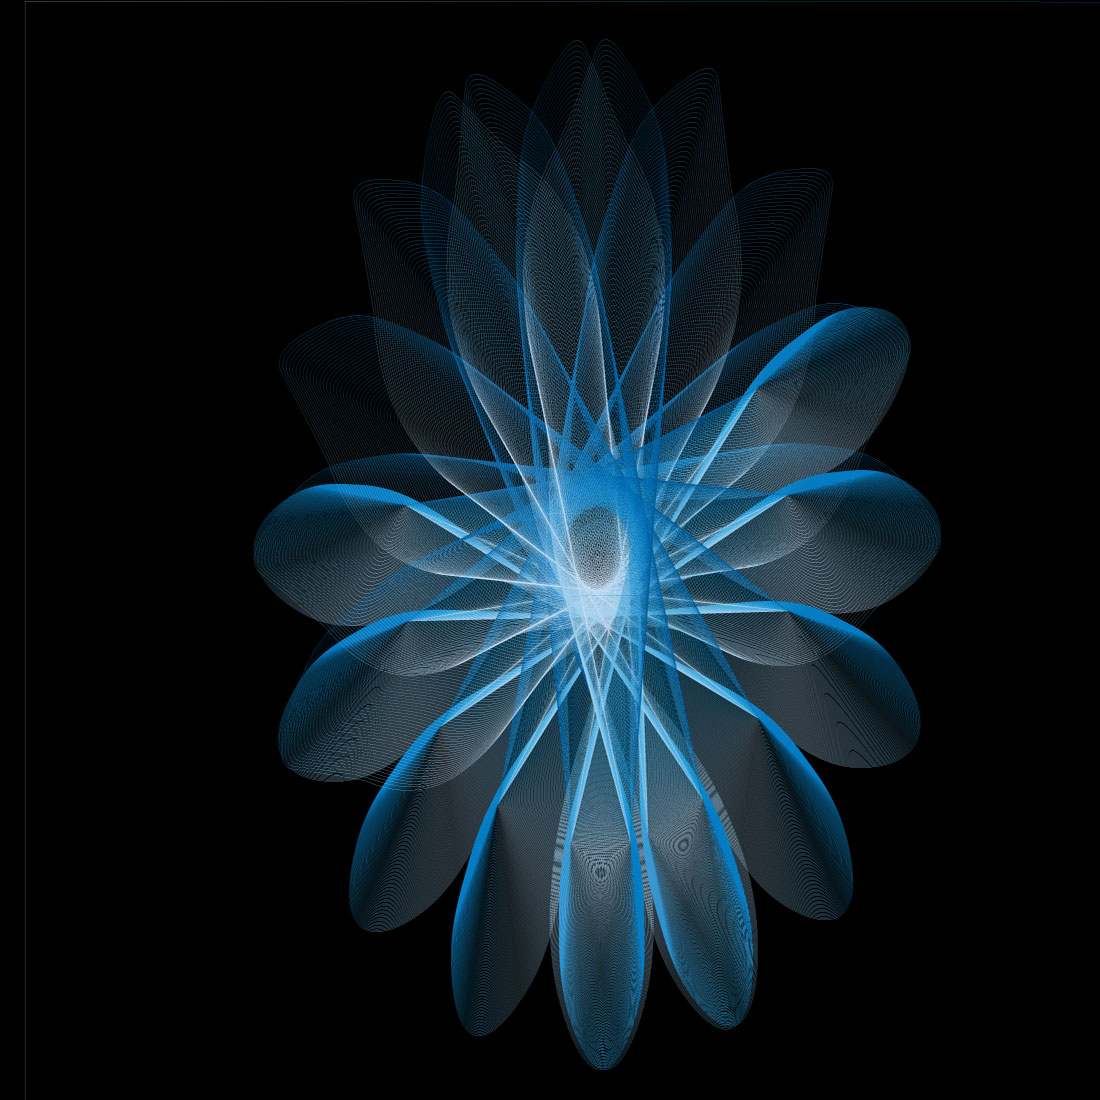 gradeint background in blue flower with black background1 296